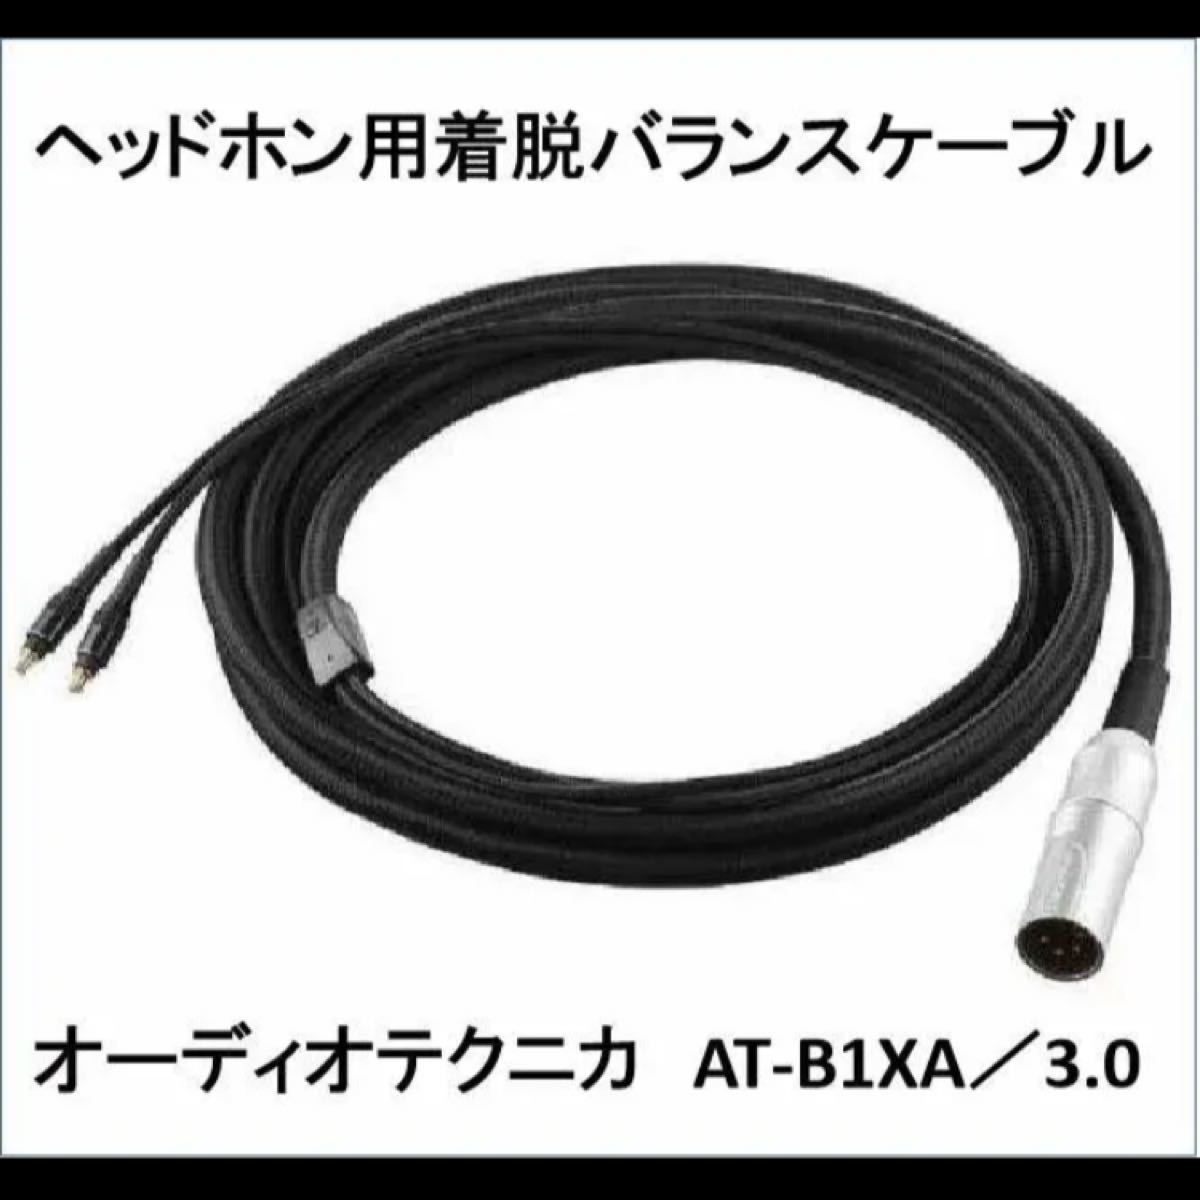 AT-B1XA/3.0（ATH-ADX5000用着脱バランスケーブル） - ケーブル/シールド